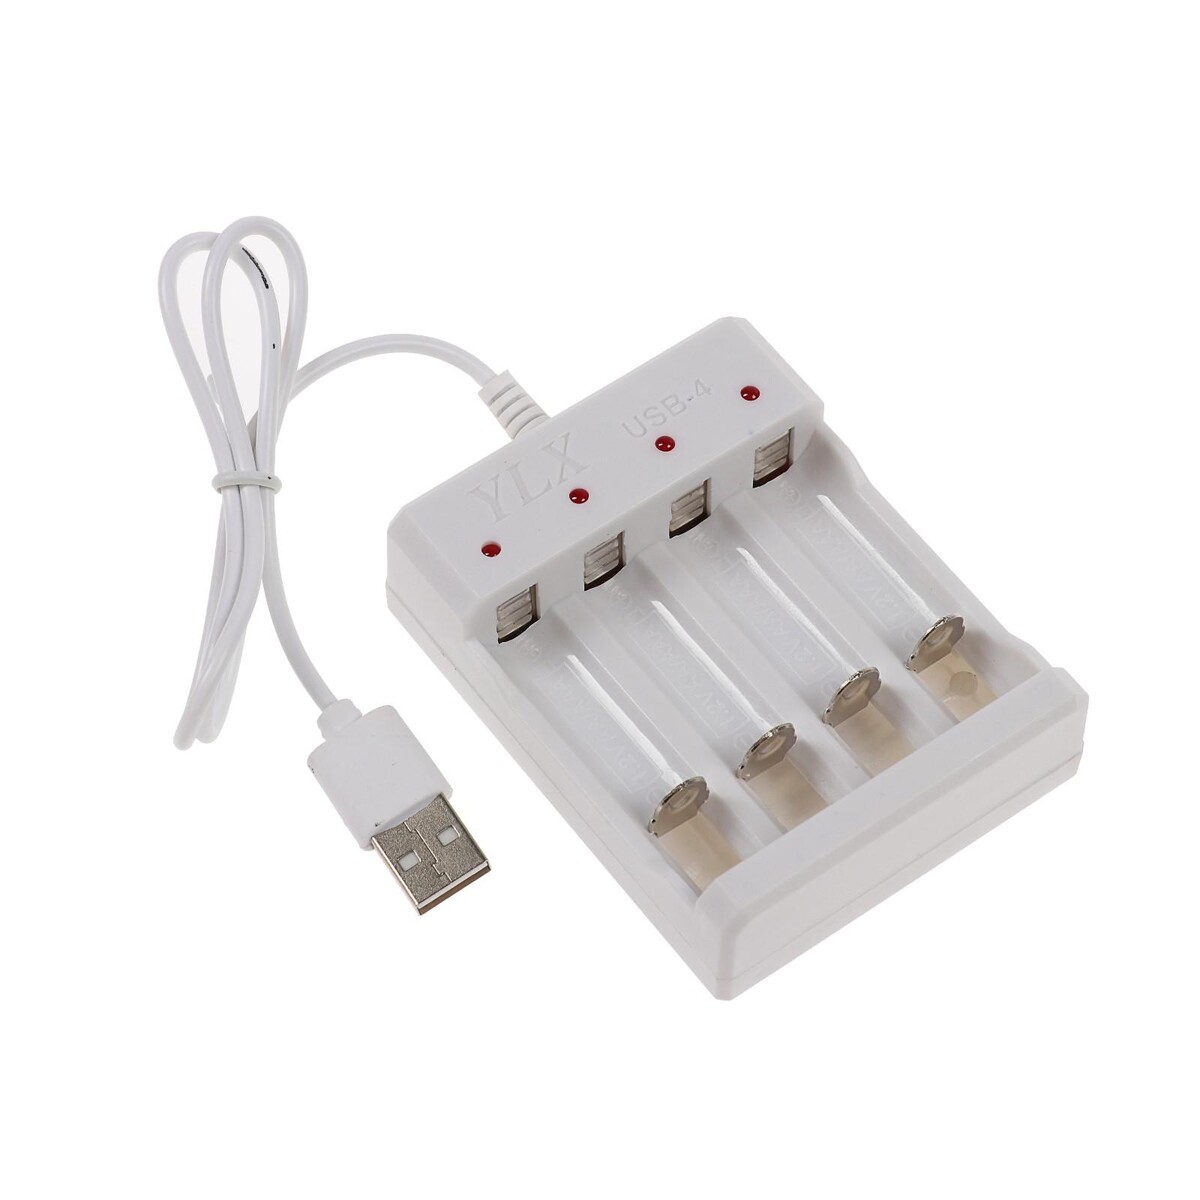 Зарядное устройство luazon для 4х аккумуляторов аа или ааа uc-24, usb, ток заряда 250 ма, белое kolner зарядное устройство для аккумуляторов